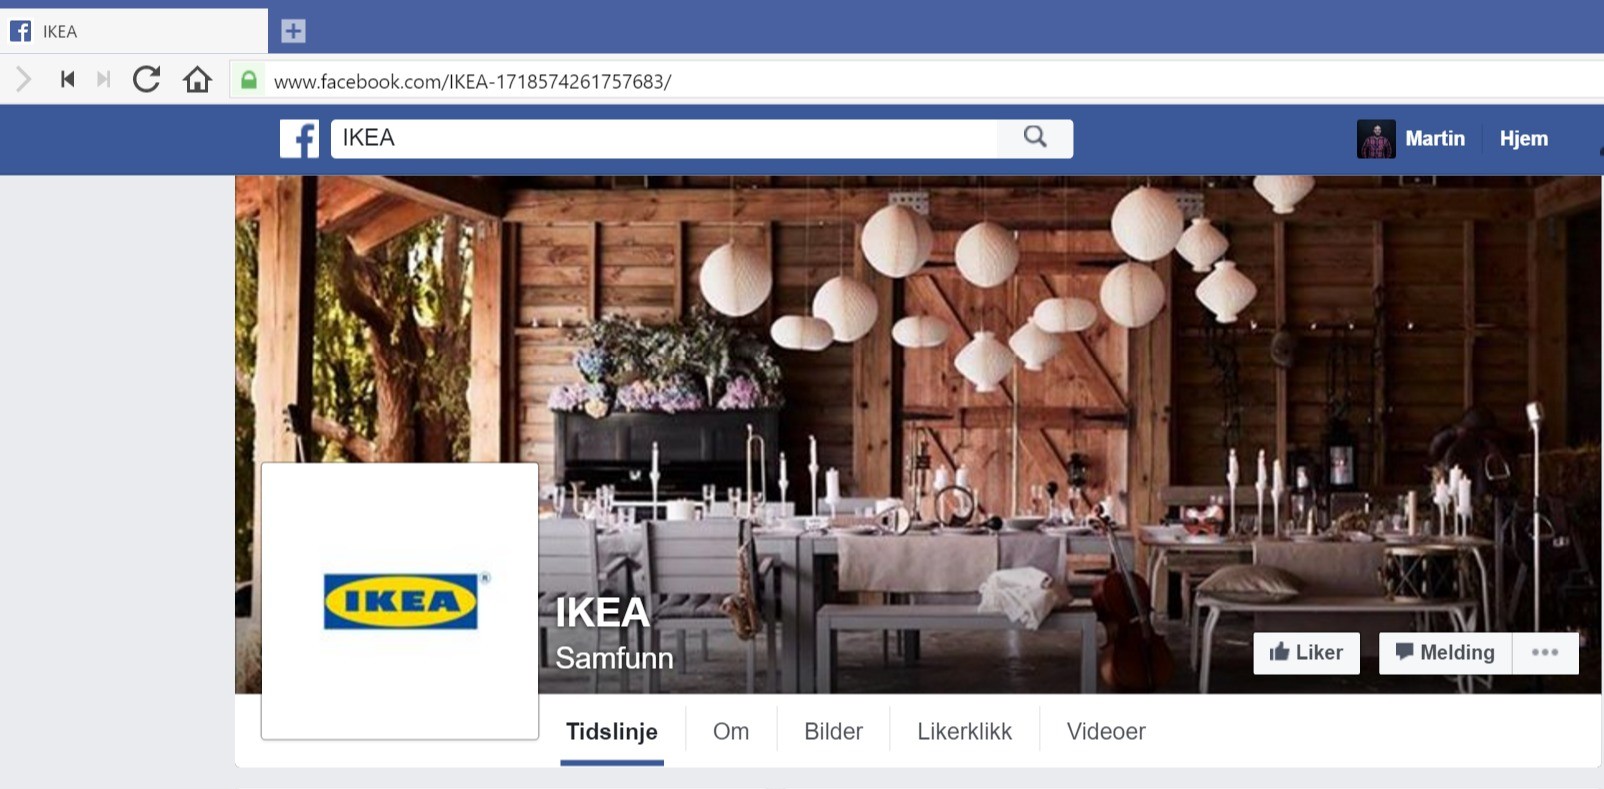 Ser du at denne IKEA-siden er falsk?